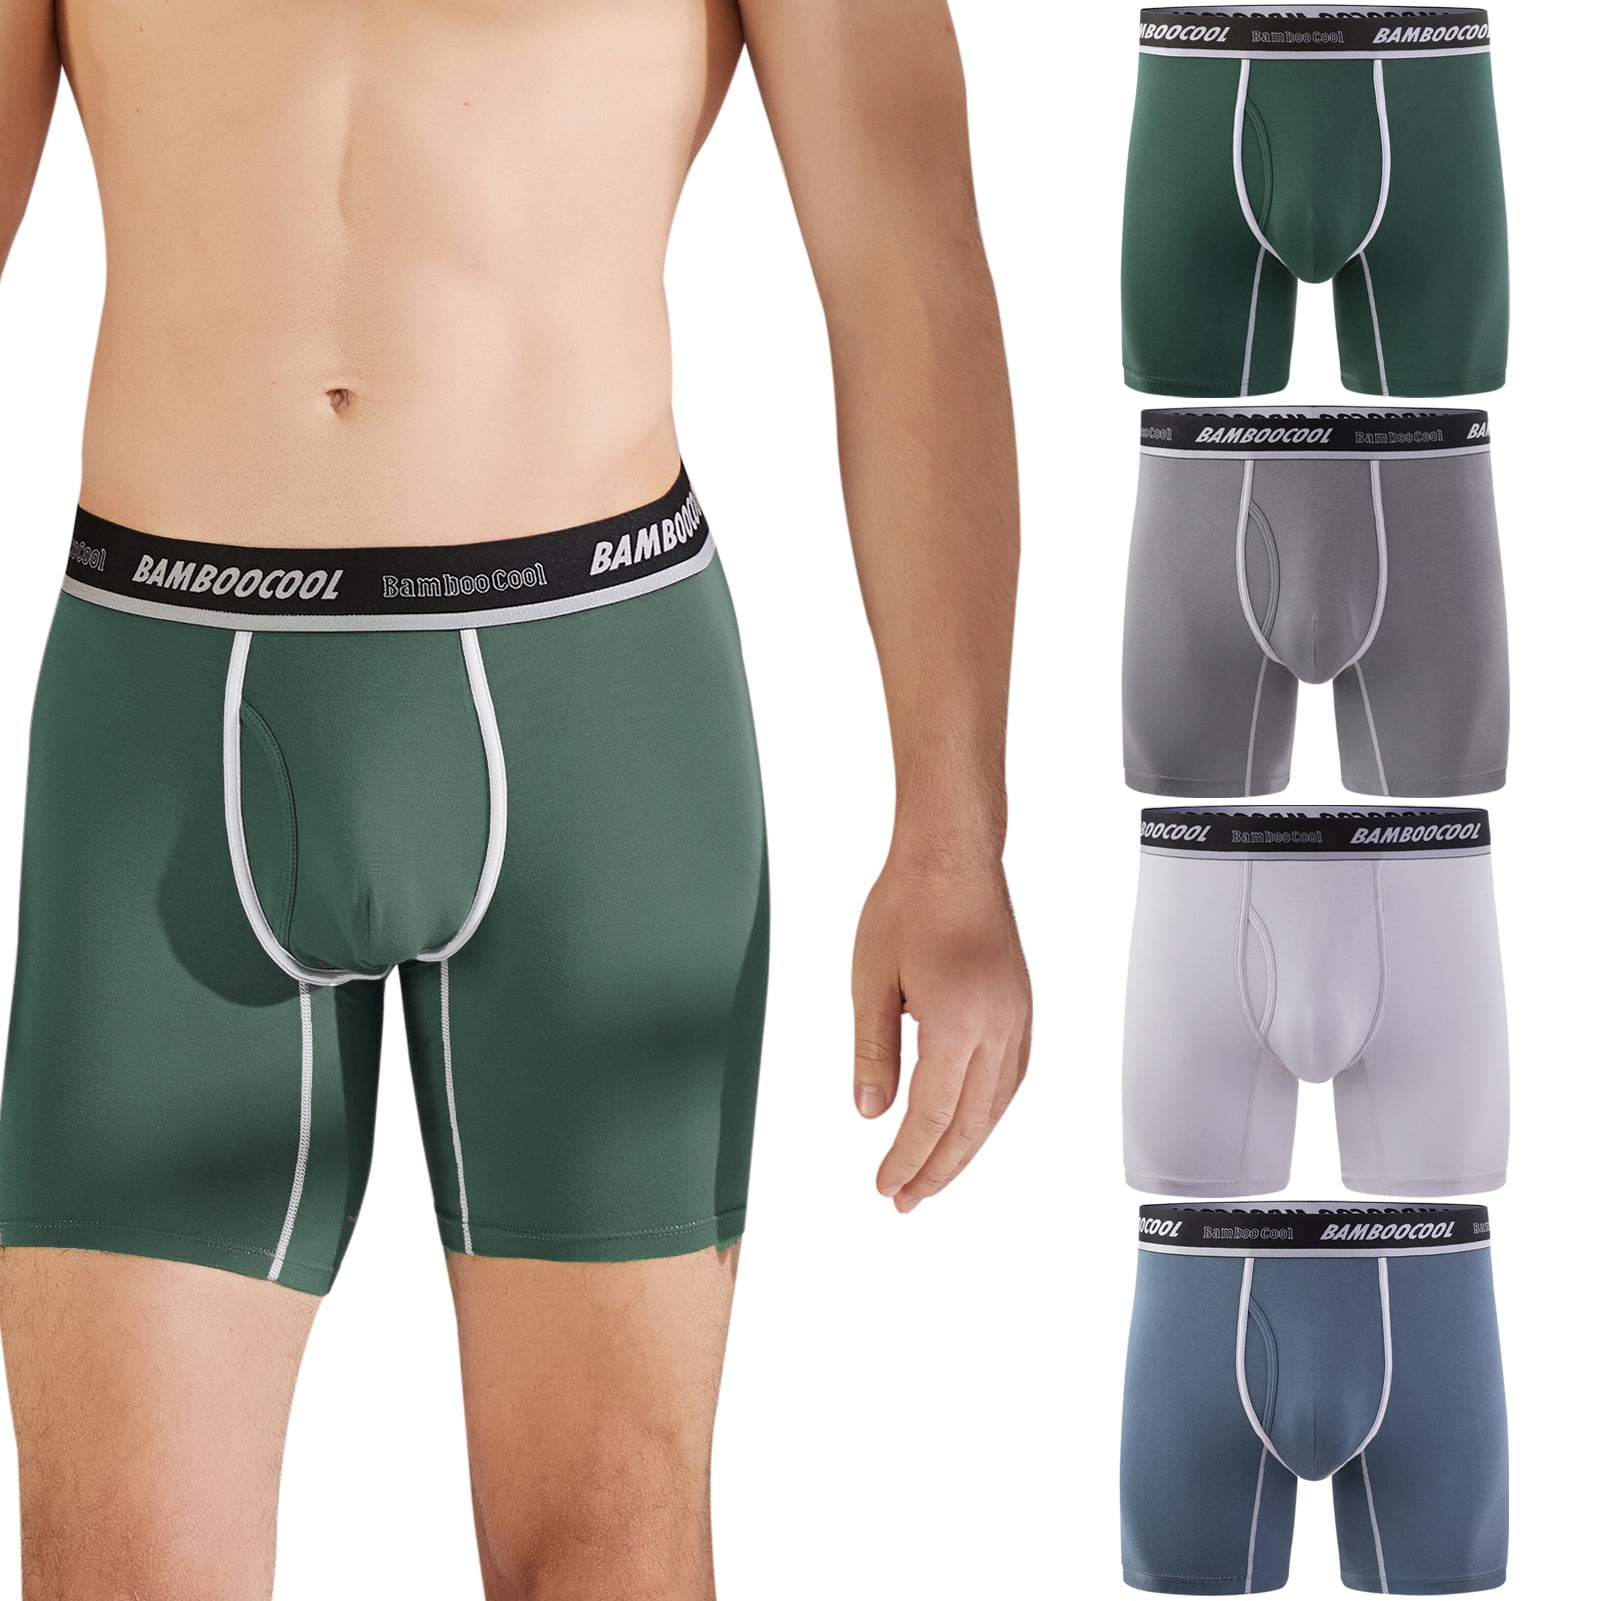 Separatec 3Pack Men Underwear Breathable Boxer Brief Lightweight